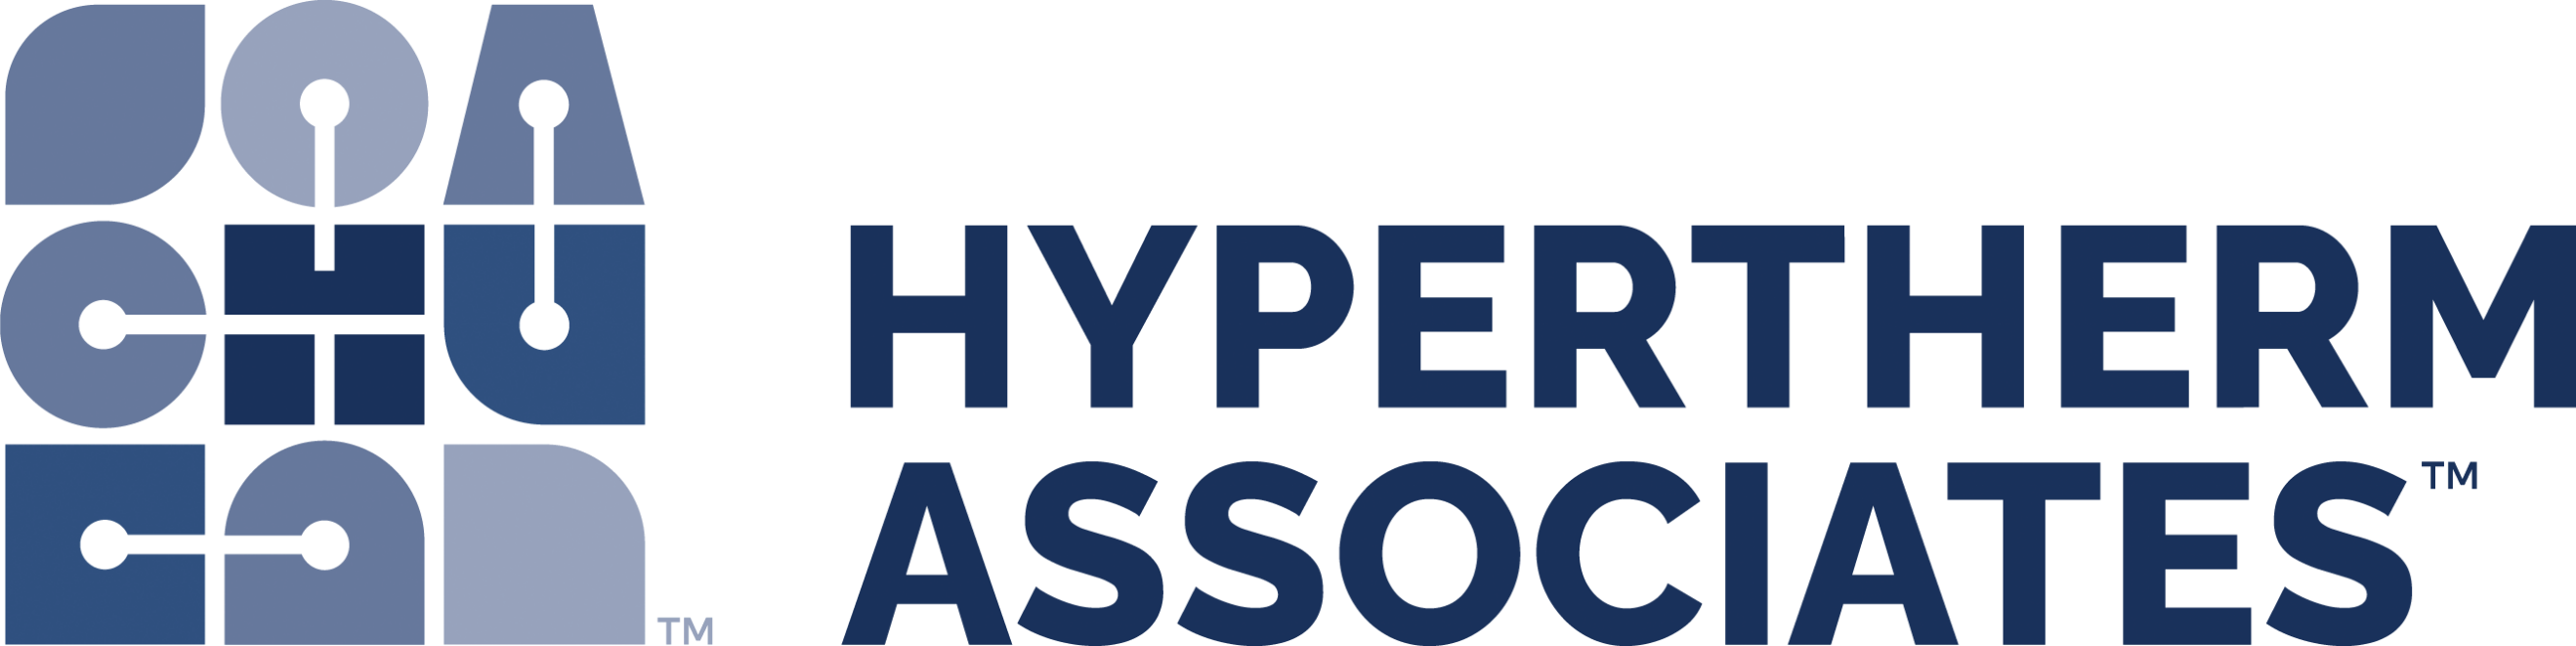 Hypertherm Associates é o novo nome corporativo do fabricante de produtos de jato de água OMAX e plasma da Hypertherm